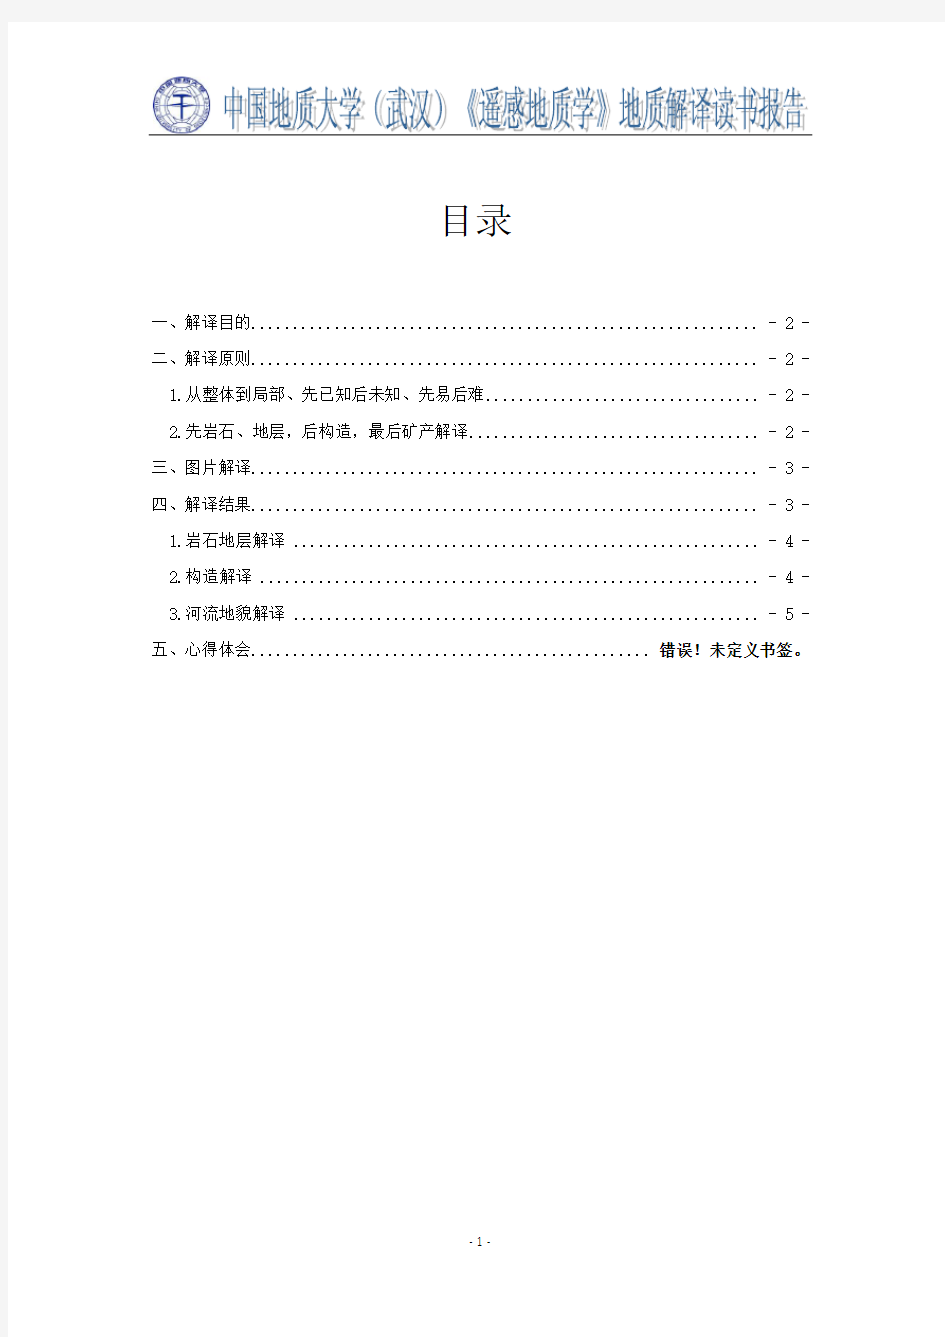 遥感地质学读书报告-中国地质大学(武汉)